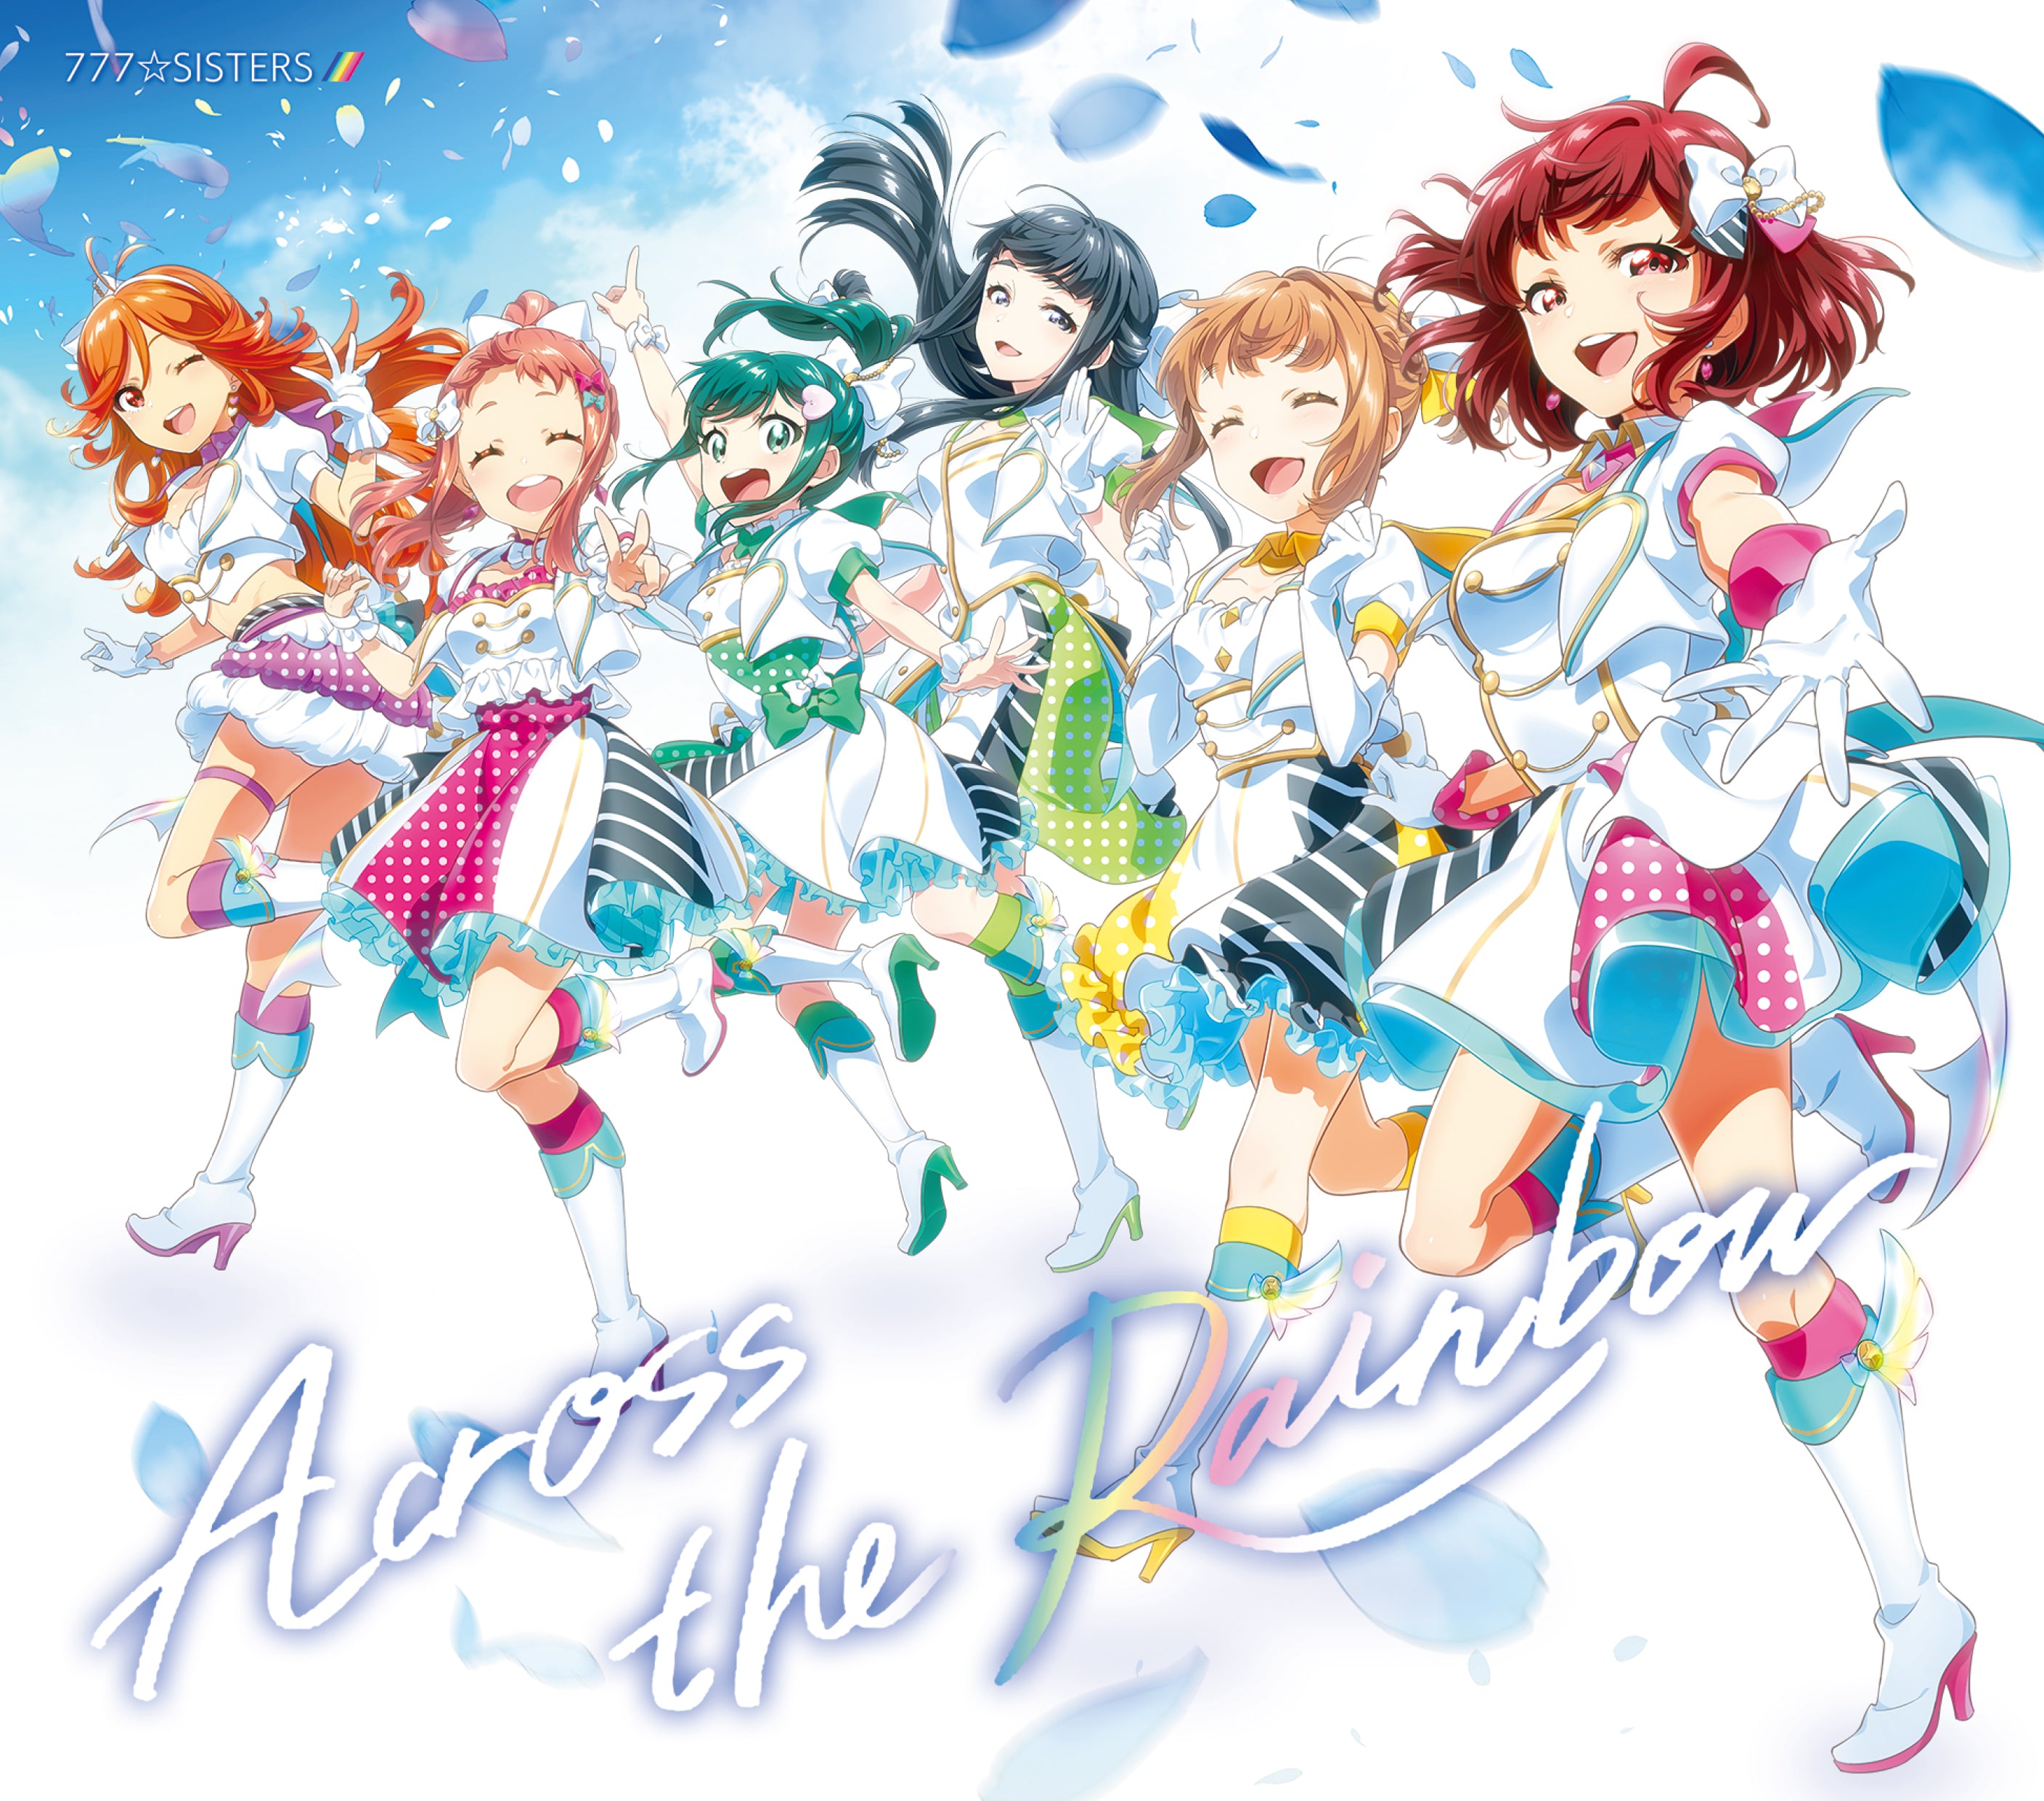 通常盤】777☆SISTERS ニューシングル『Across the Rainbow』 – Tokyo 7th Sisters Official  Online Store